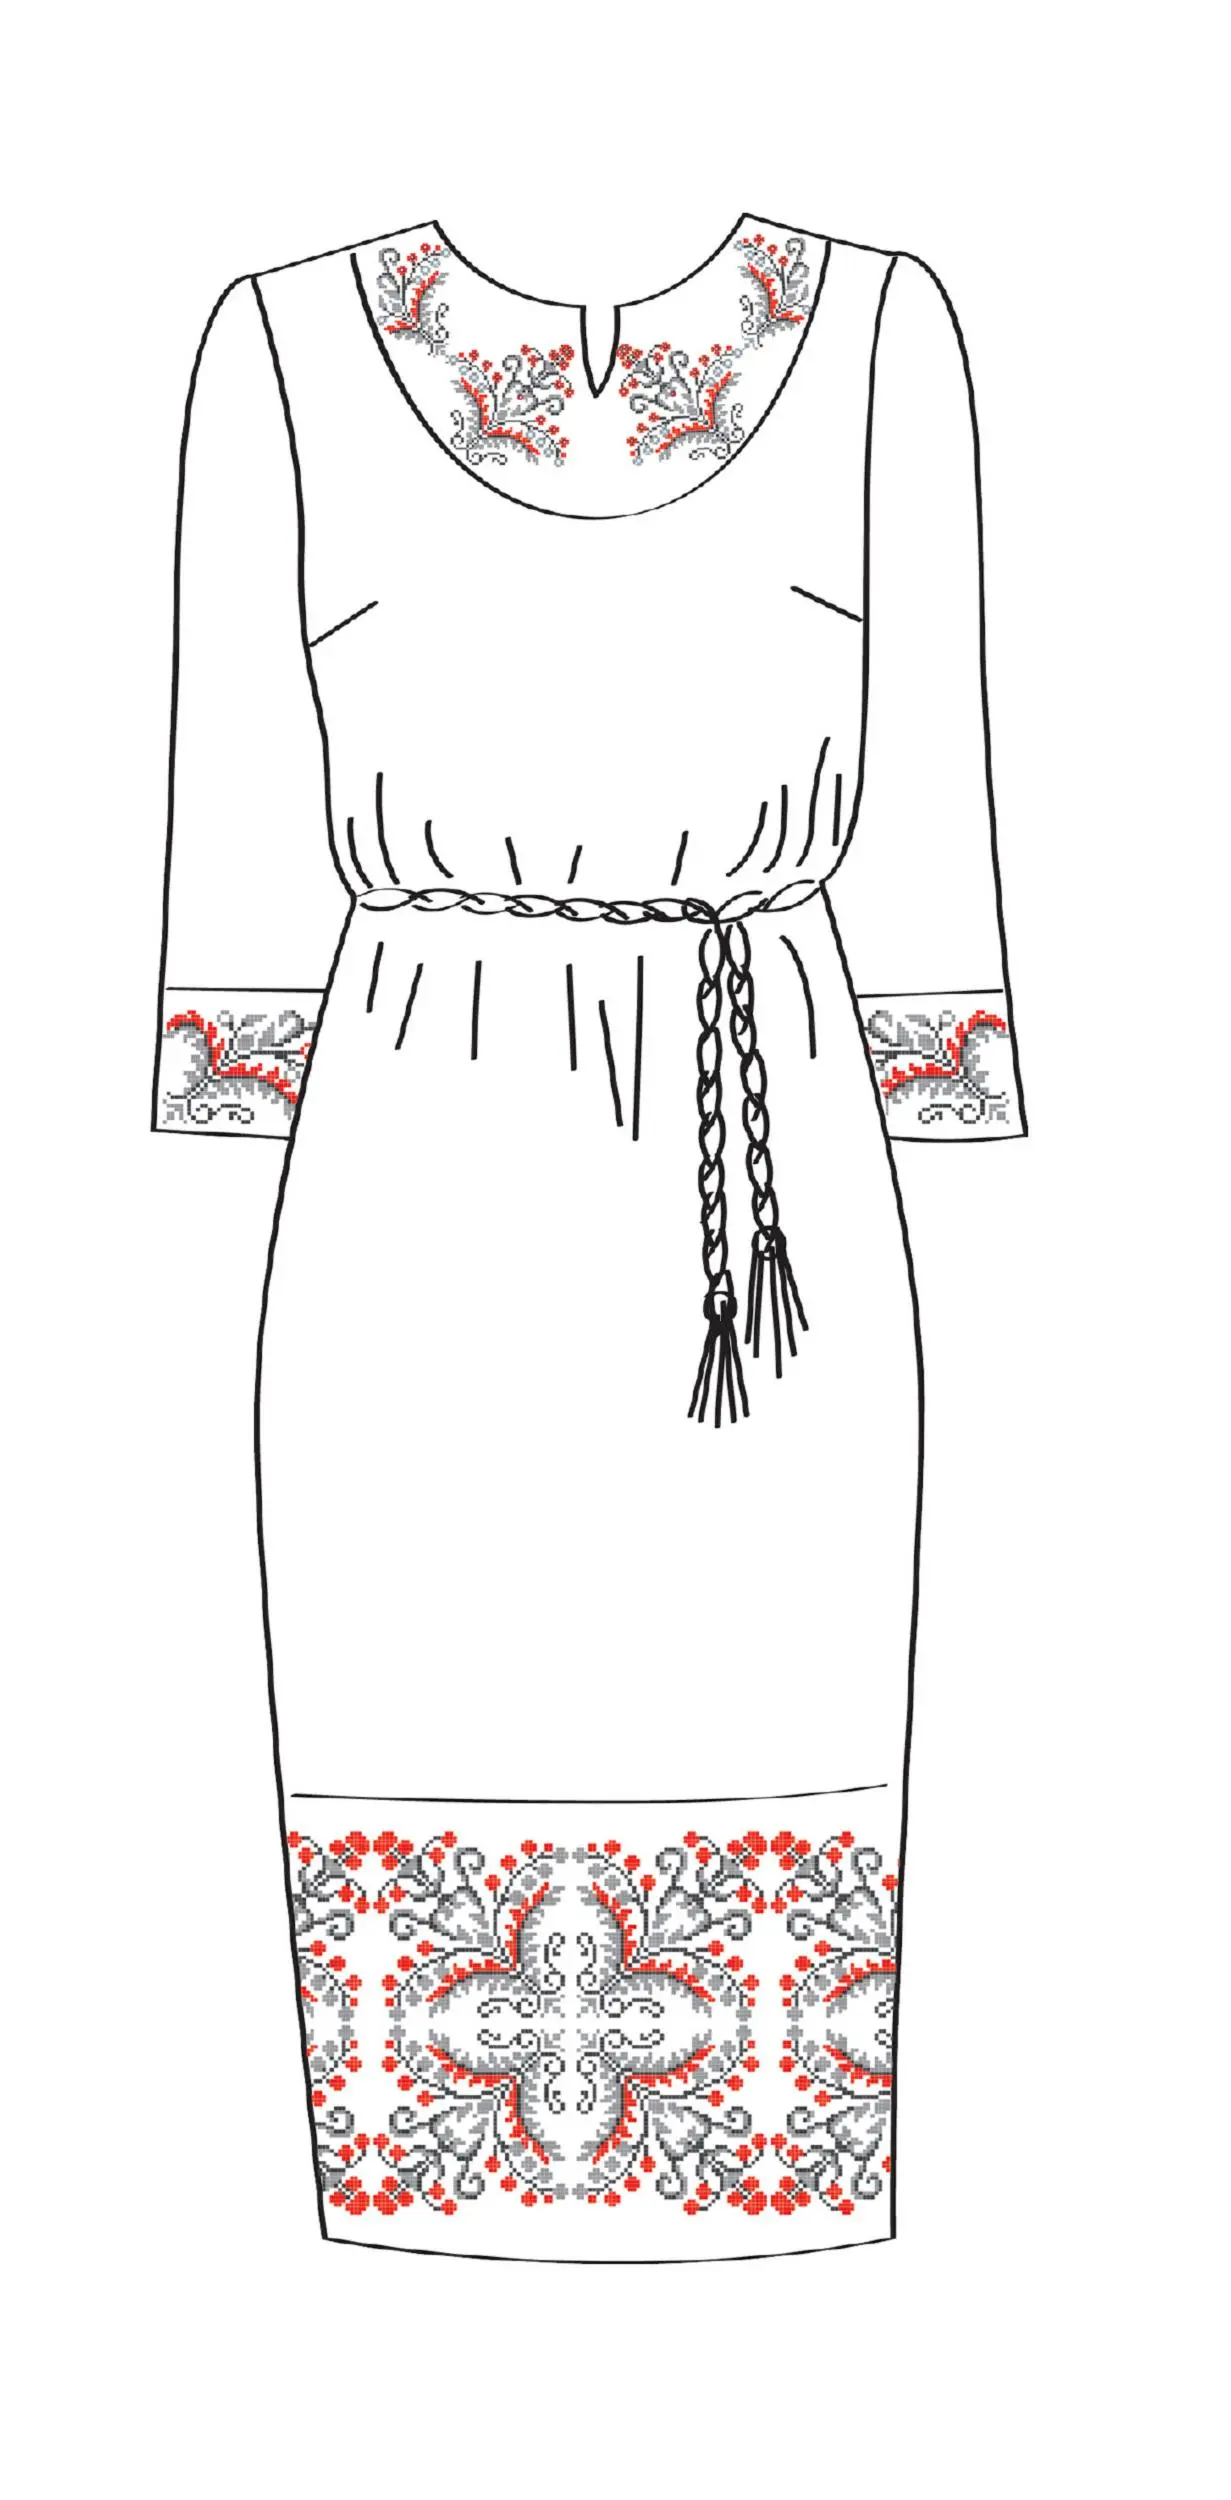 820-14/09 Плаття жіноче з поясом, біле, розмір 54